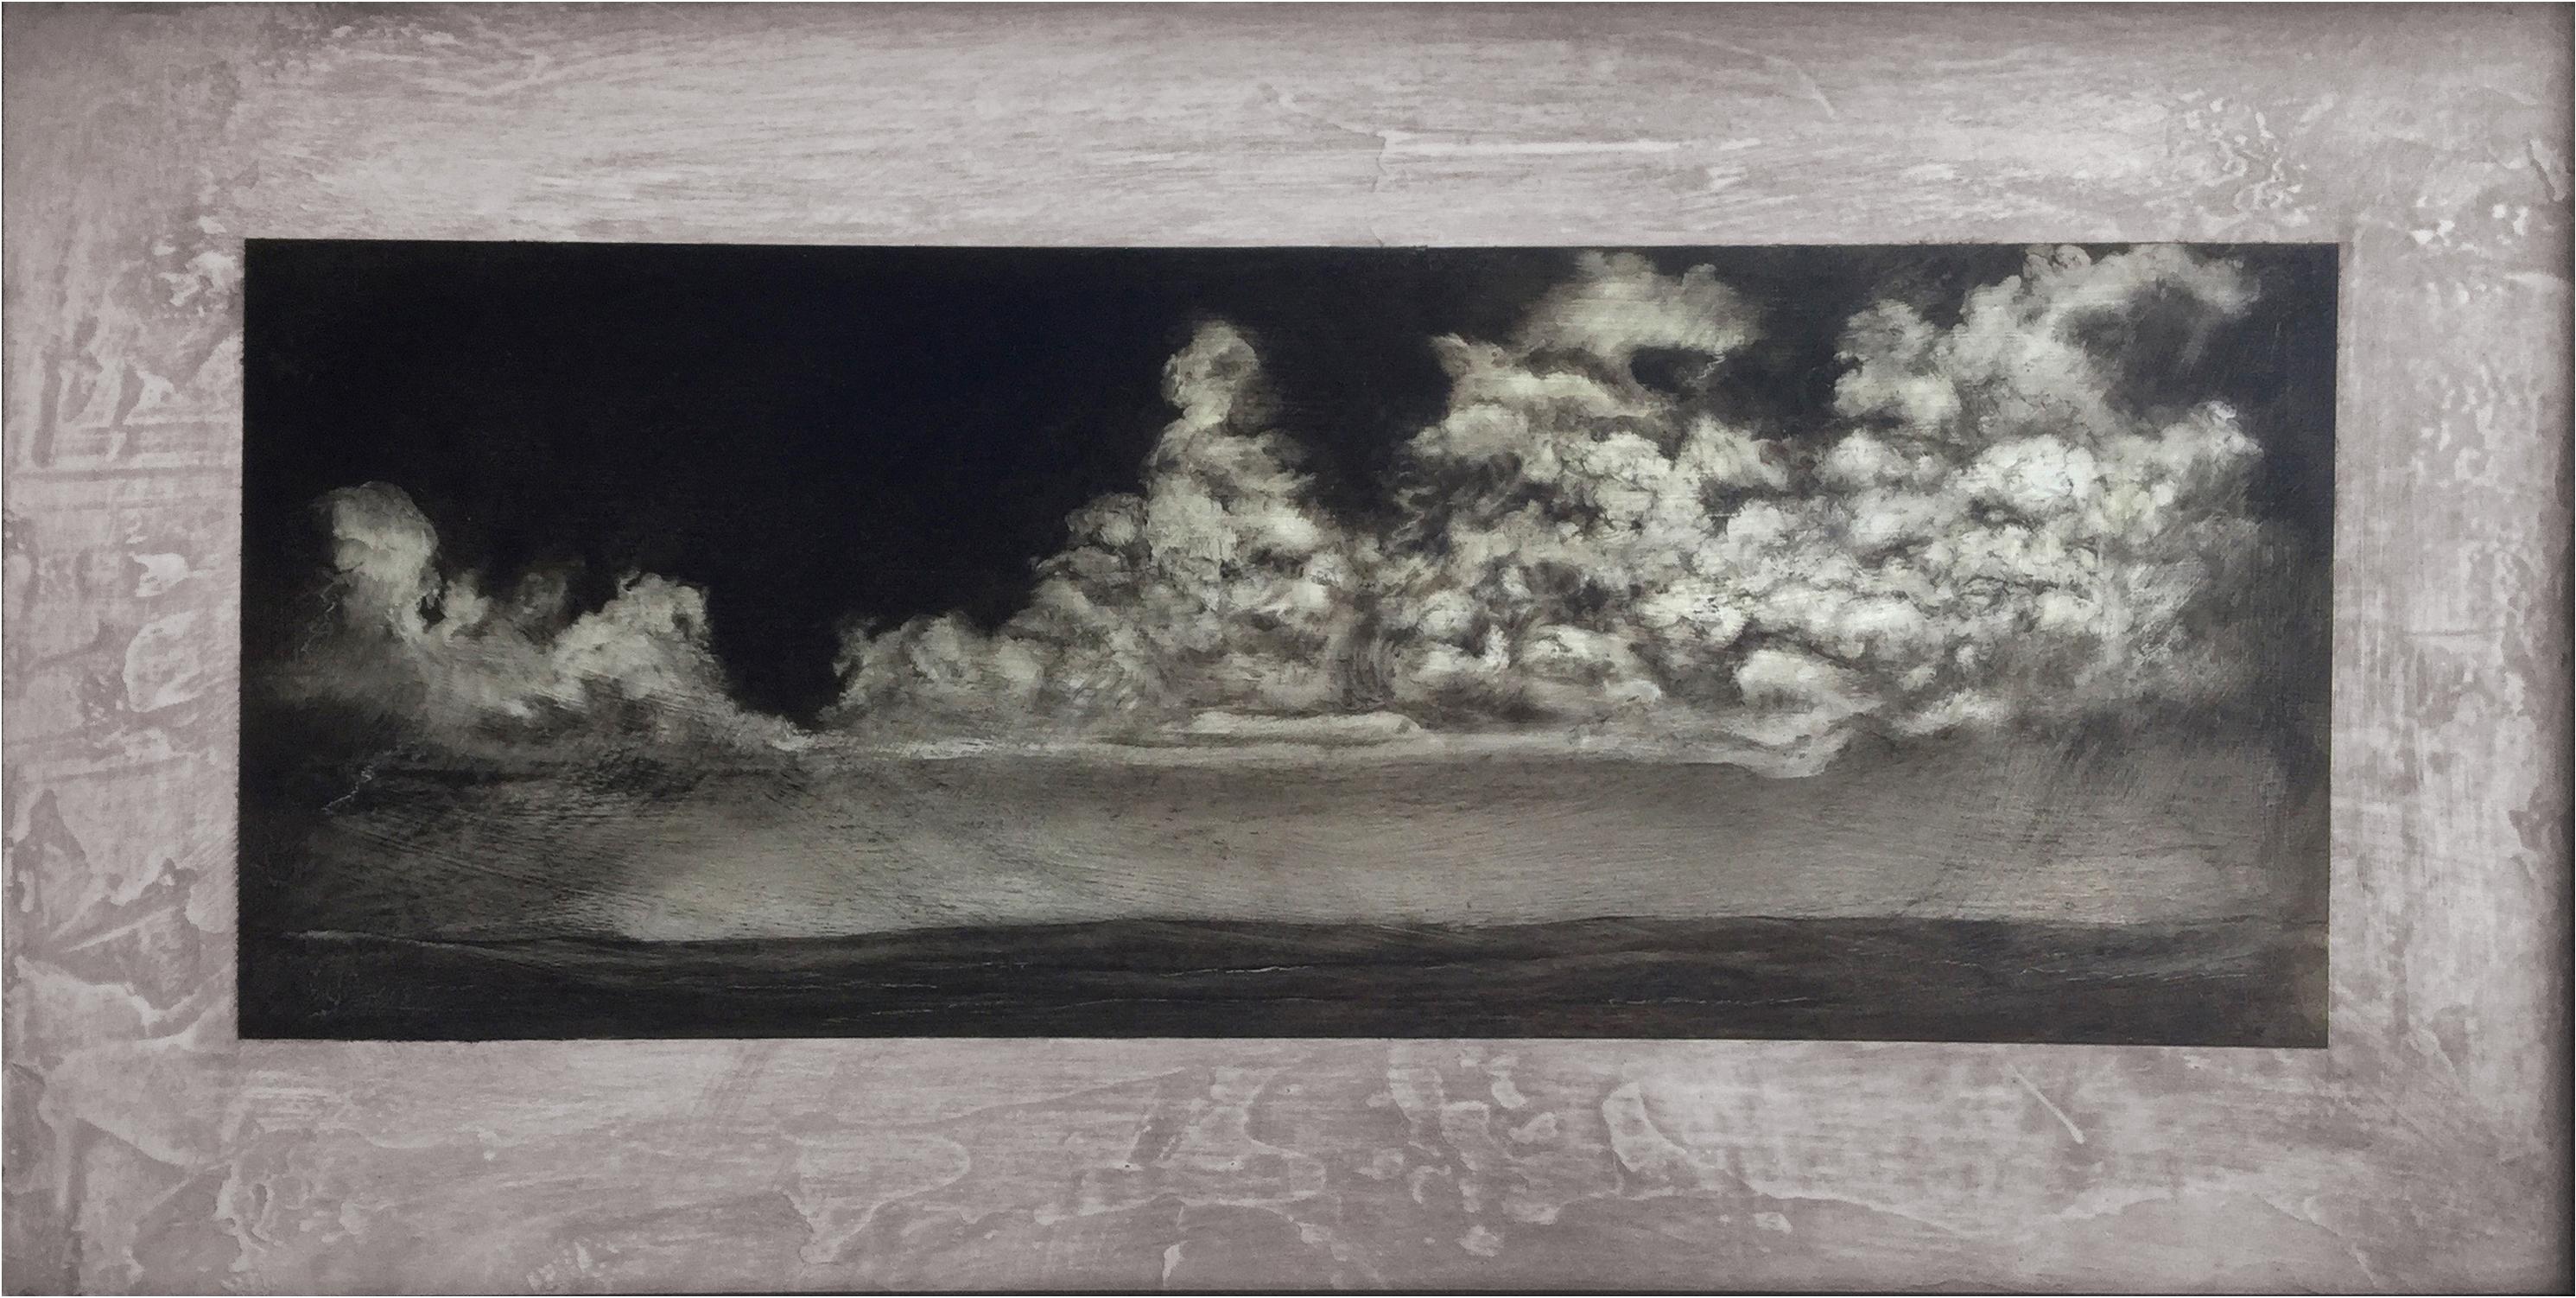 Cette peinture horizontale de Marc Barker, de 12 x 24 pouces, capture des cumulus flottants dans une palette monochromatique. Les nuages, peints de manière experte, forment une ligne au-dessus de l'horizon d'un paysage aride et sombre. De la série